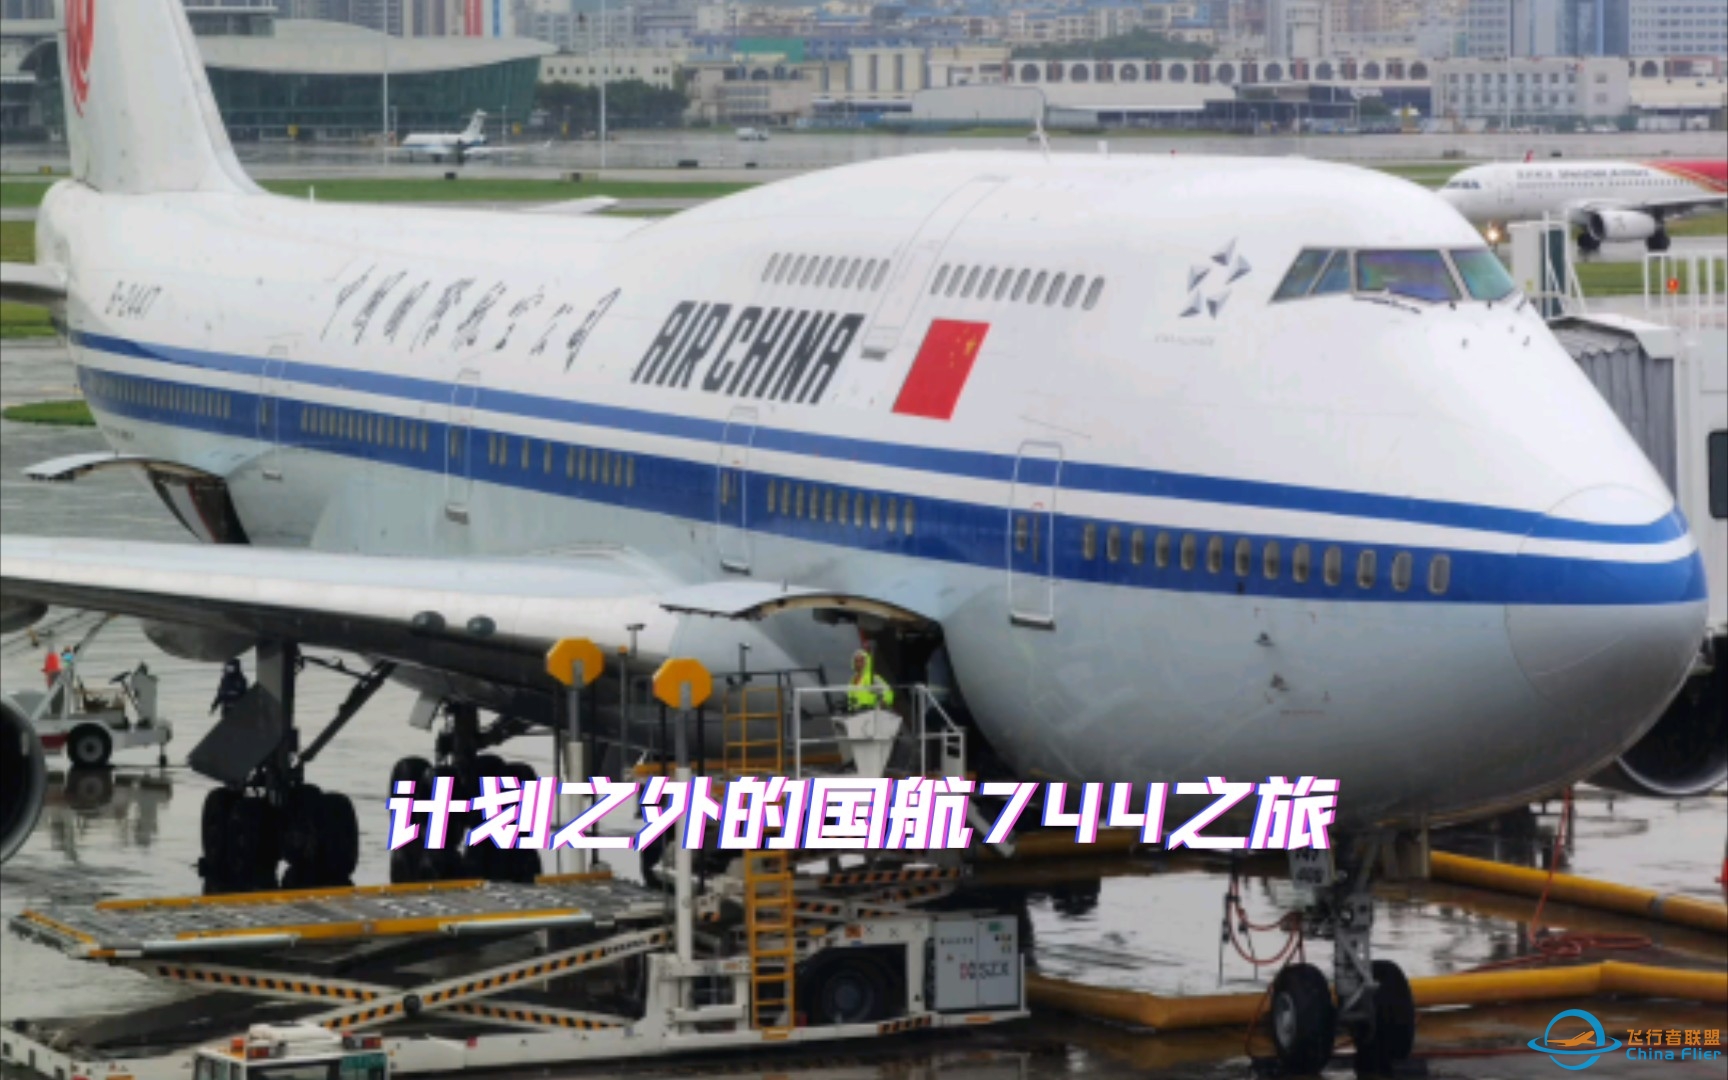 从机龄0.6年到28.6年，原本想体验深航最新空客A321NX，却意外坐上国航第二老的波音747-400（B-2447）-2920 